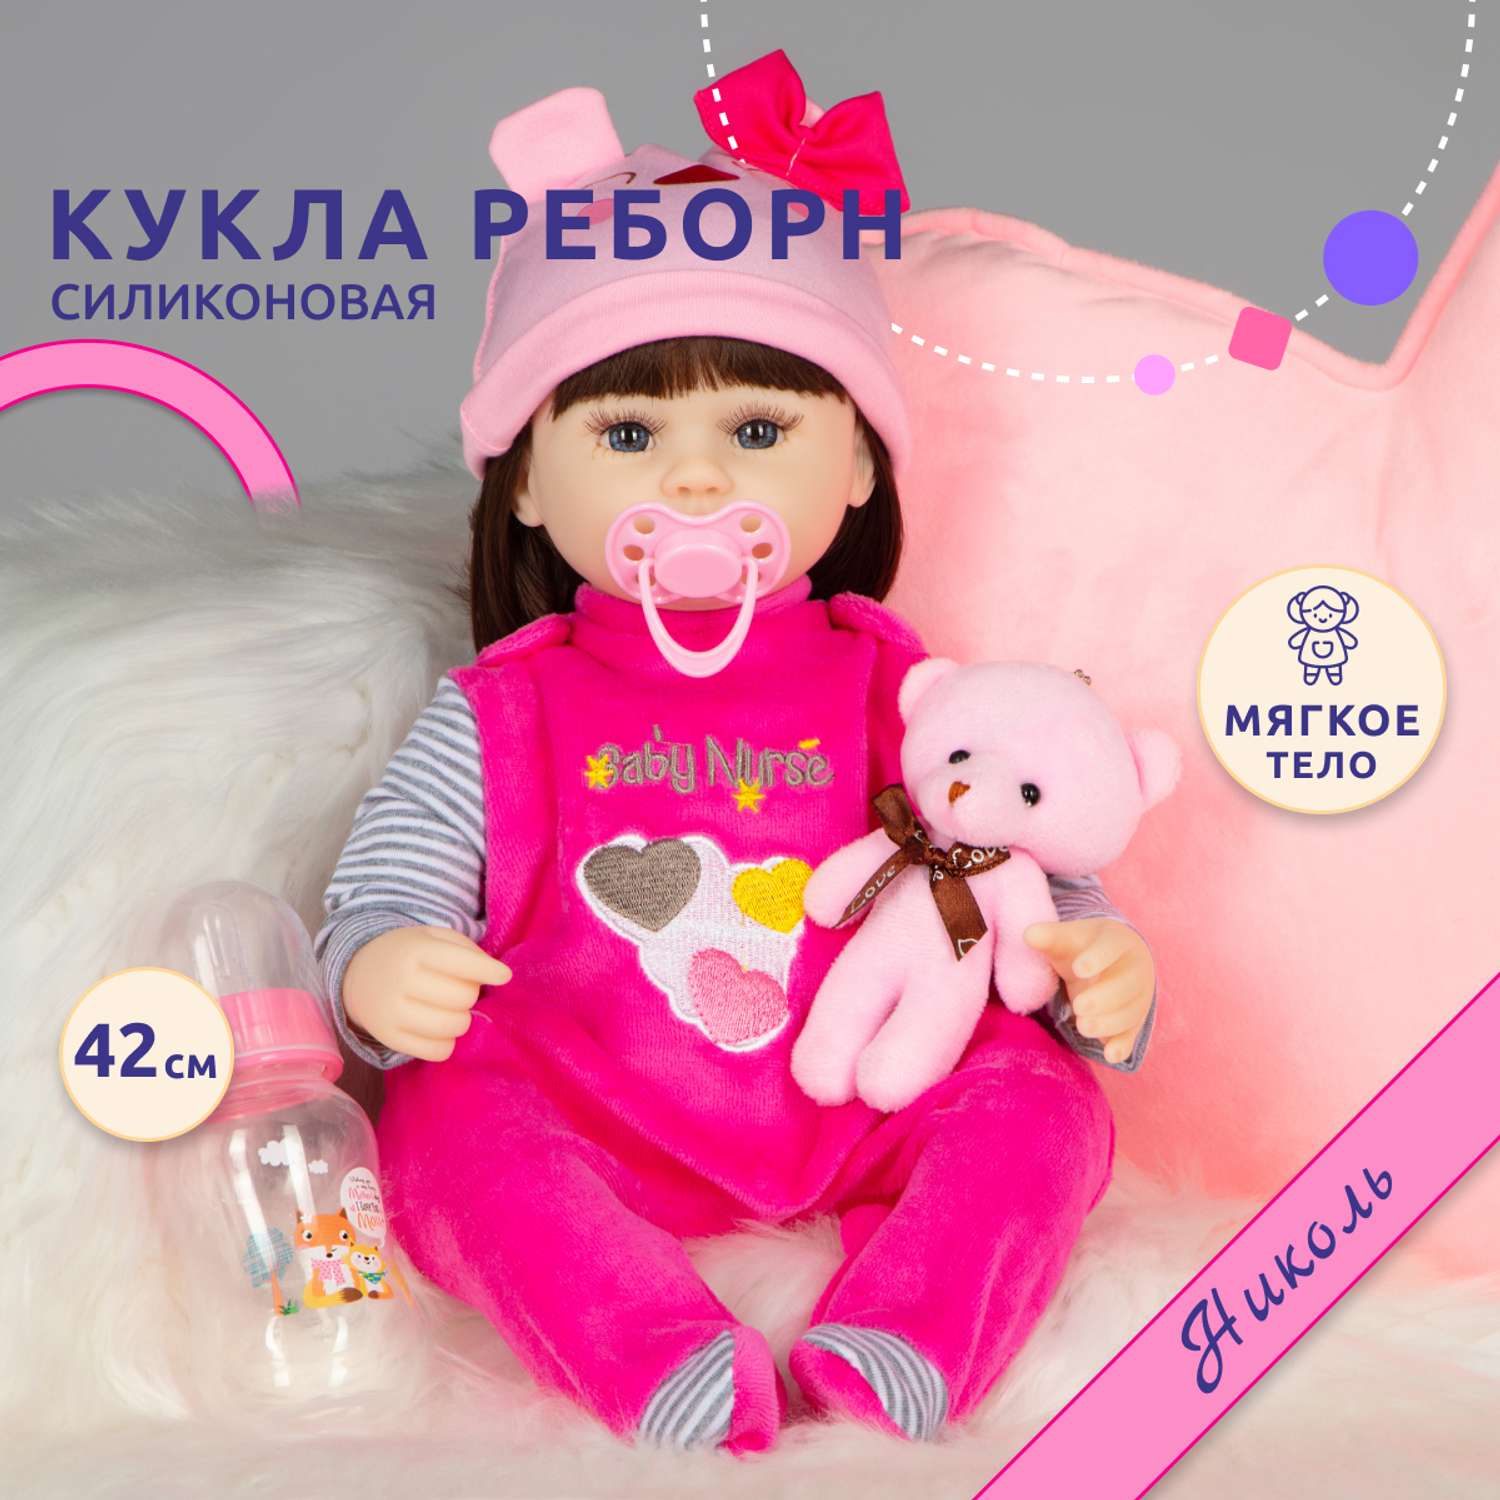 Модные куклы: сложности выбора игрушки для девочки от 5 лет